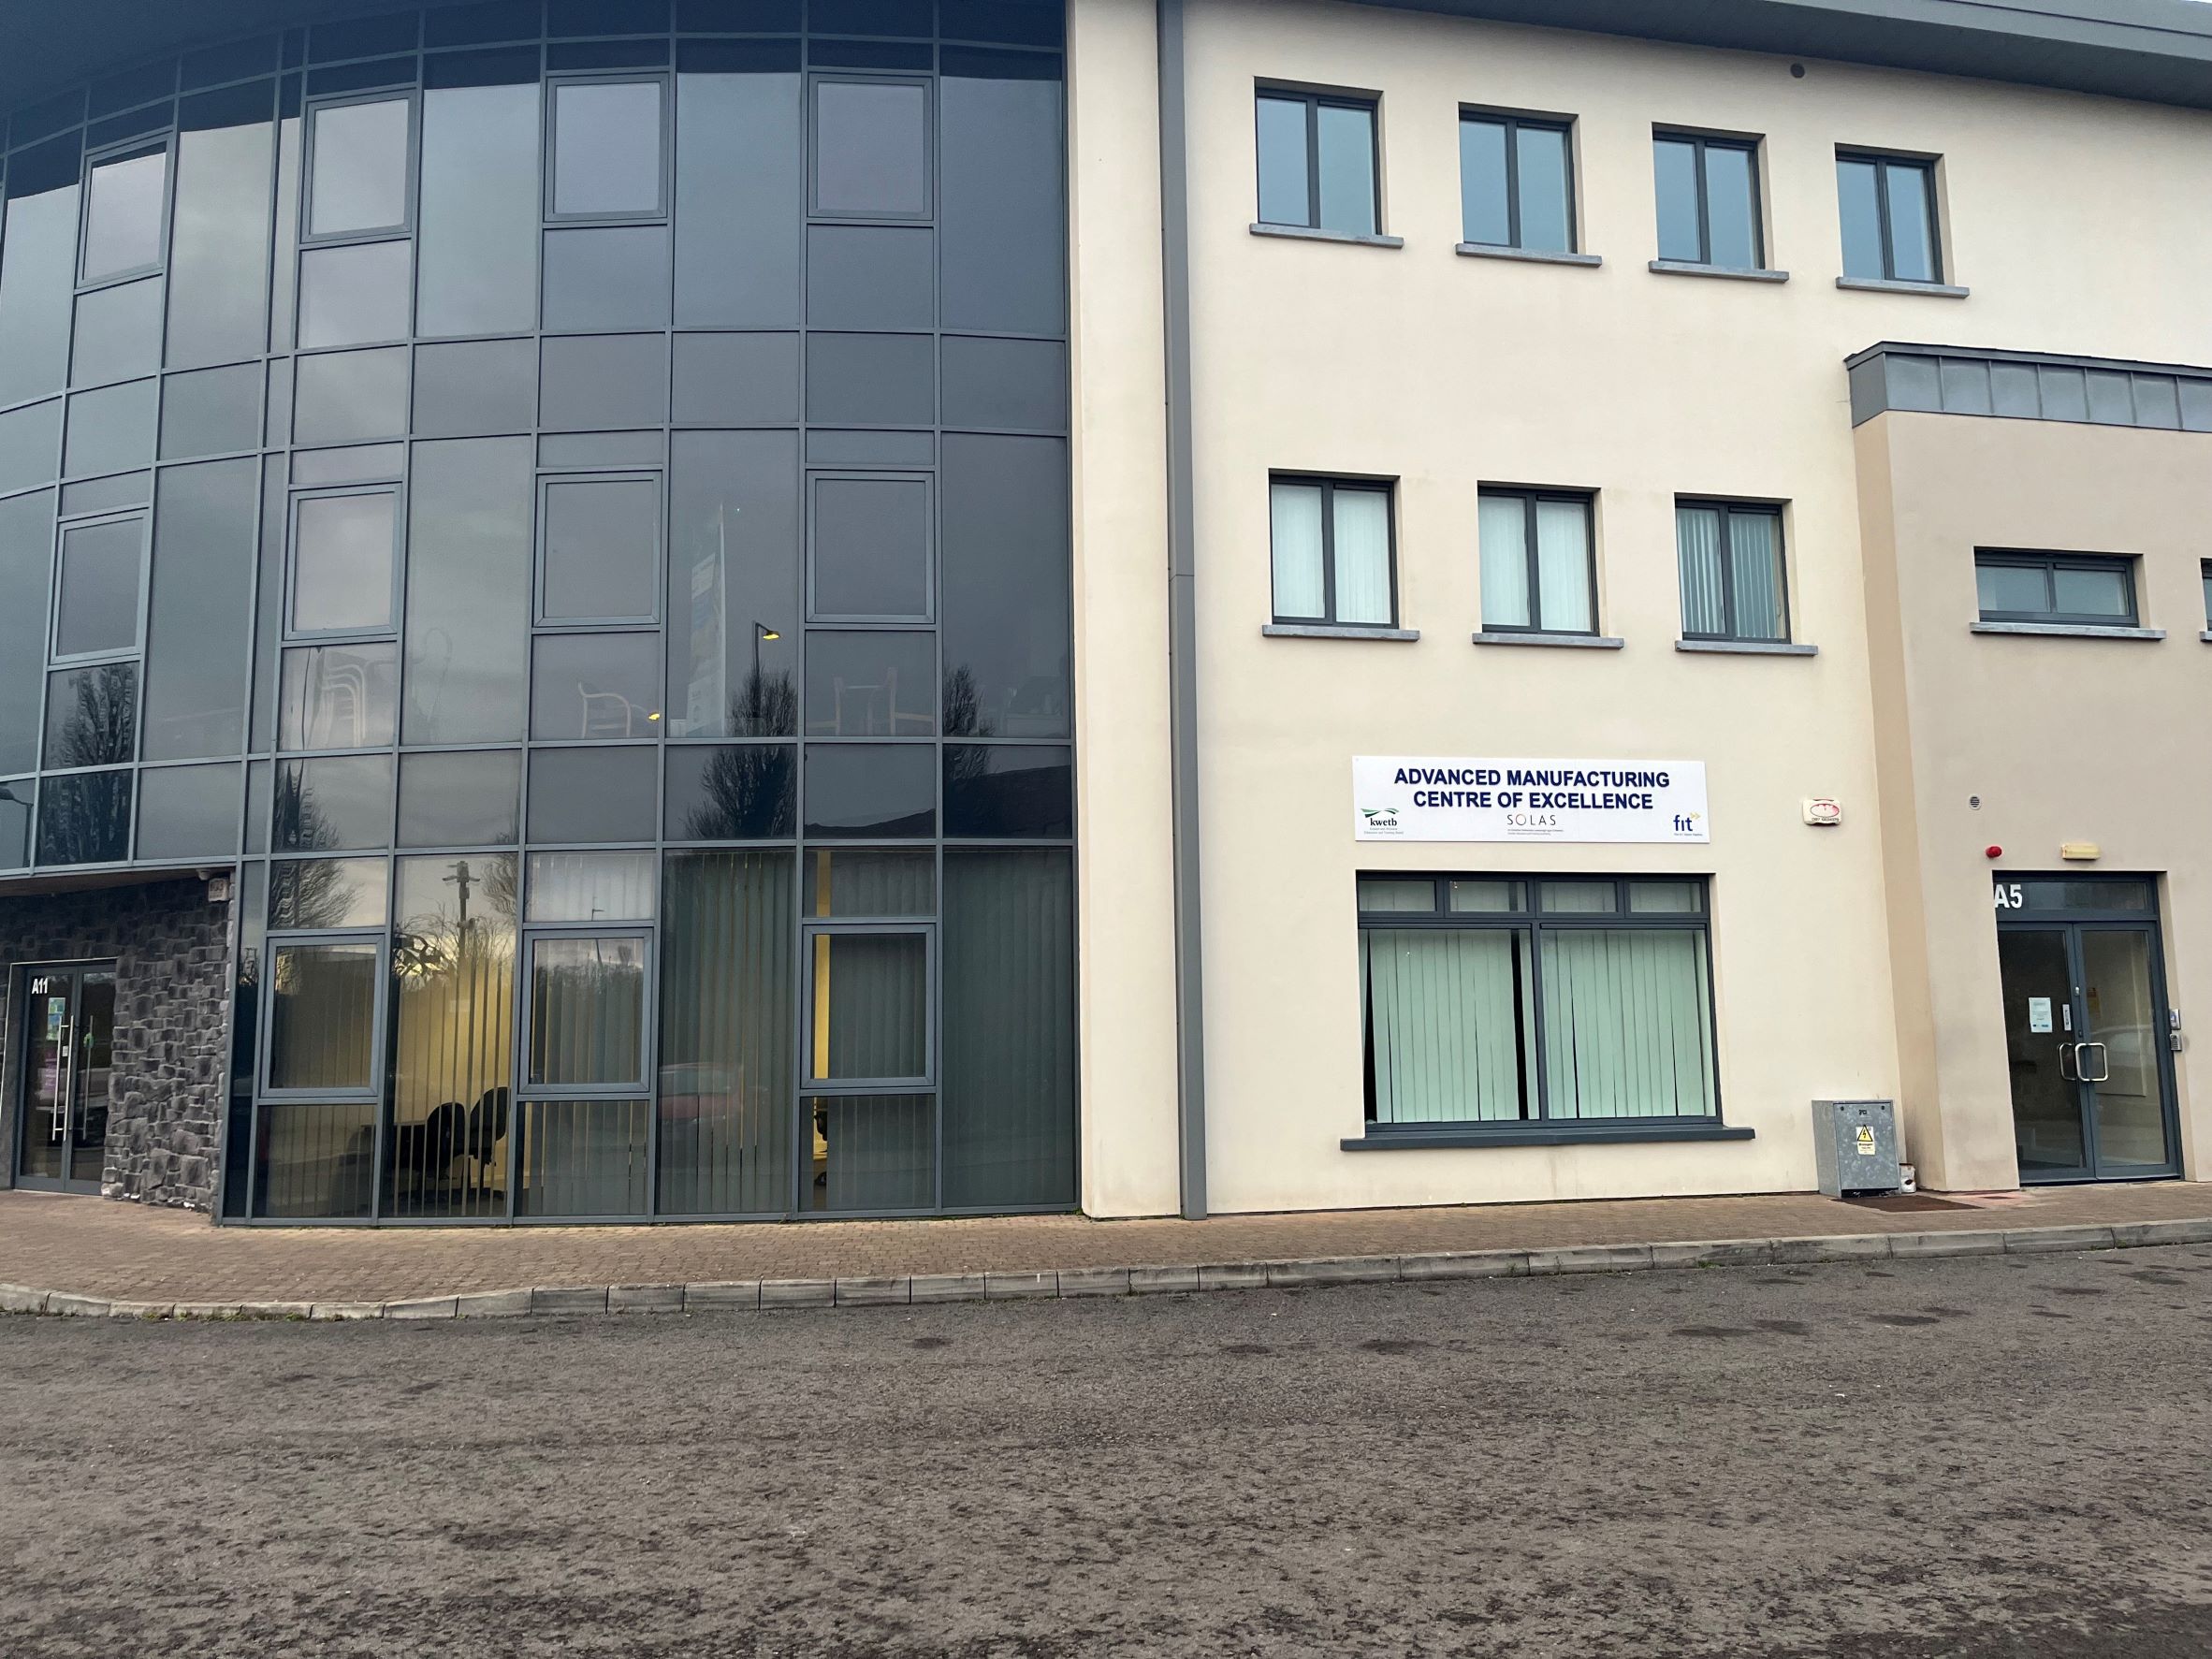 M4 Business Park, Celbridge, Co. Kildare – Unit A5